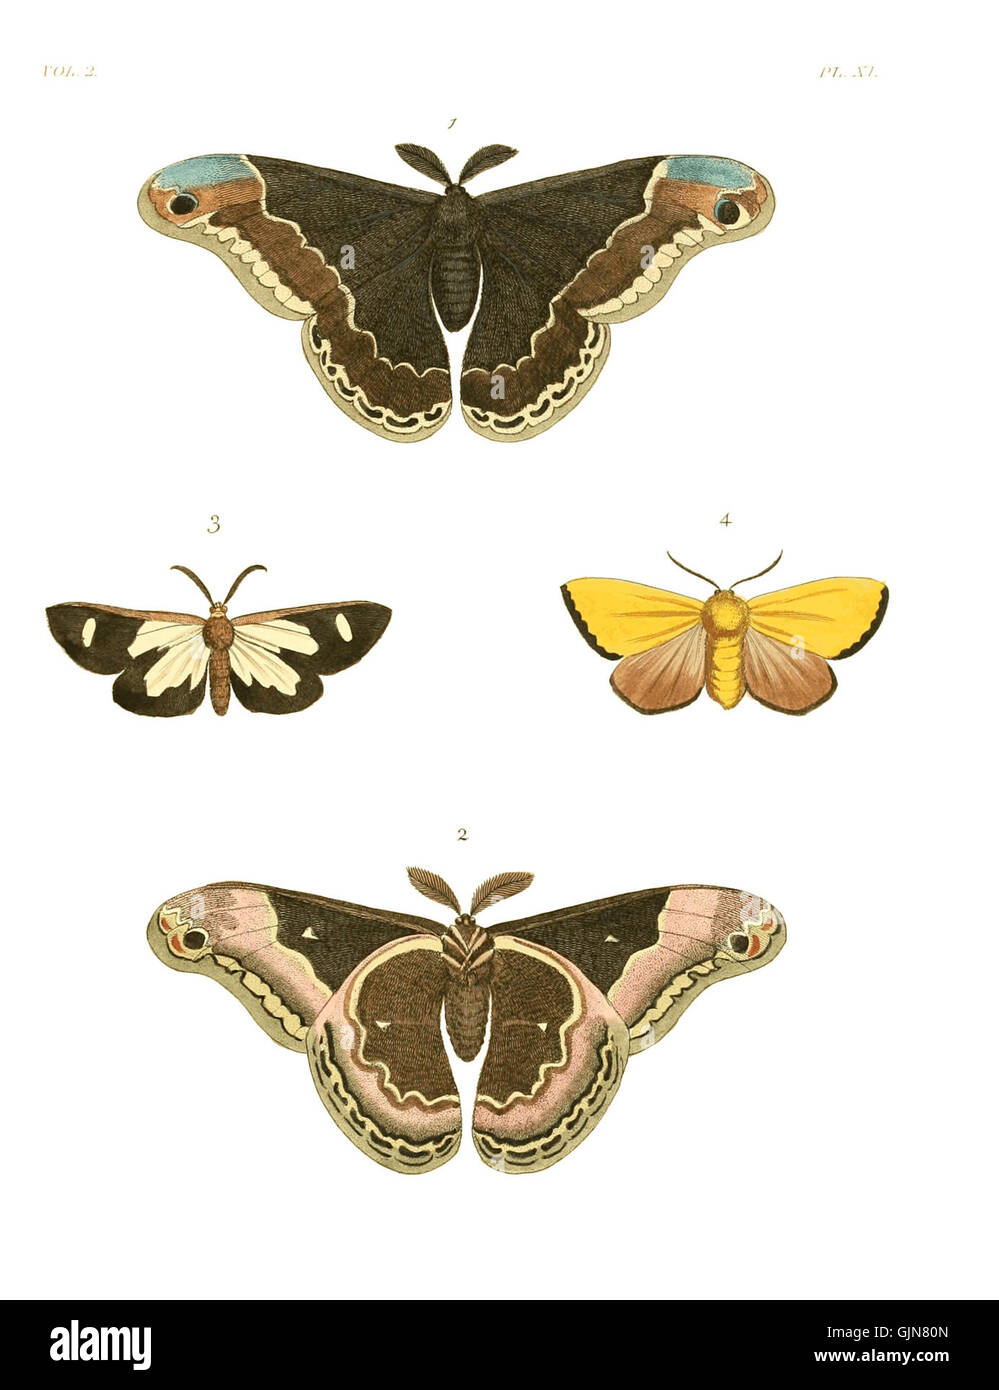 Illustrations of Exotic Entomology II 11 Stock Photo